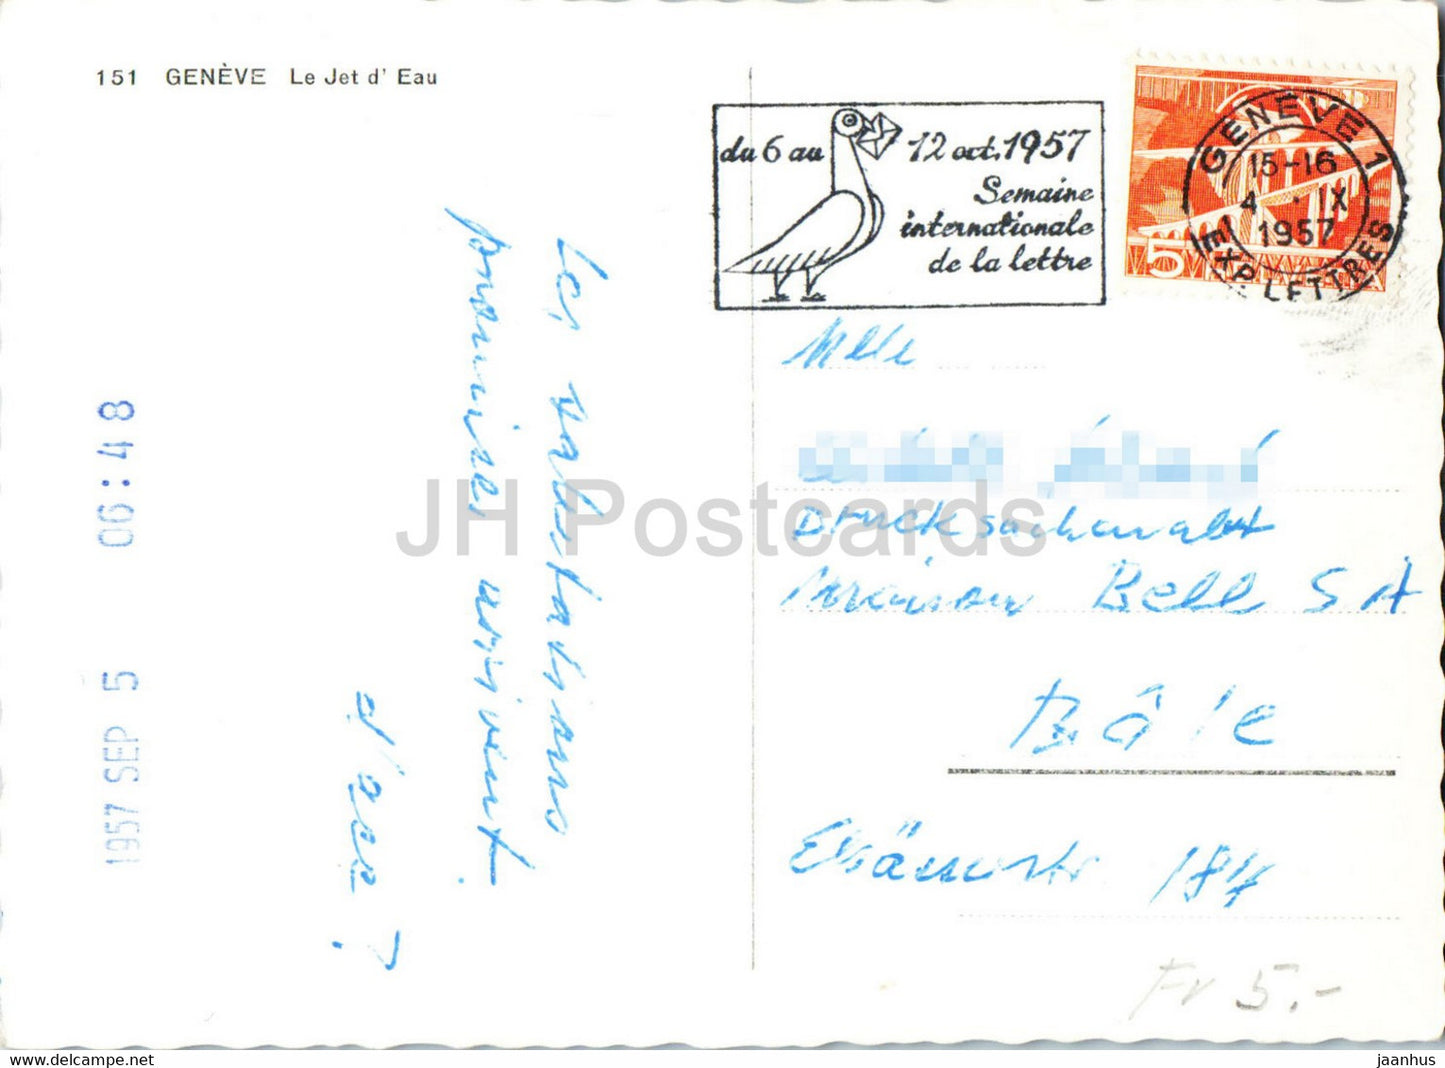 Geneve - Le Jet d' Eau - navire - 151 - carte postale ancienne - 1957 - Suisse - occasion